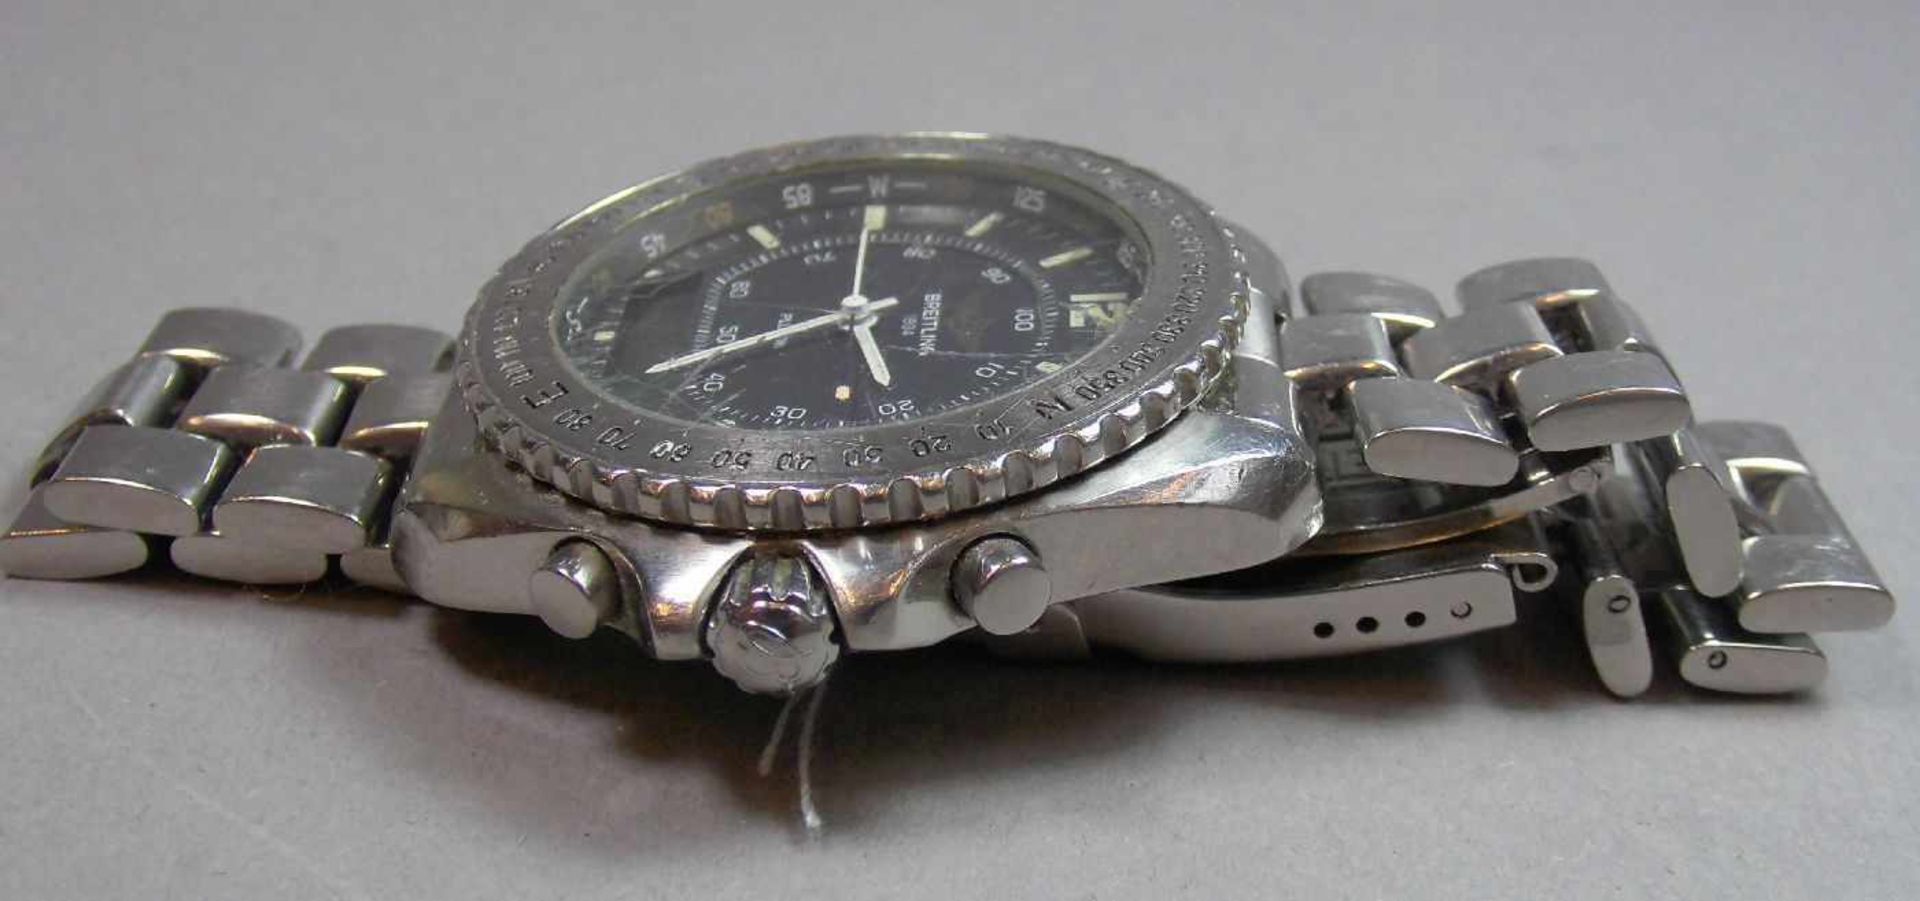 BREITLING "PLUTON" ARMBANDUHR / wristwatch, Quarz-Uhr, Schweiz. Stahlgehäuse mit drehbarer - Image 7 of 9